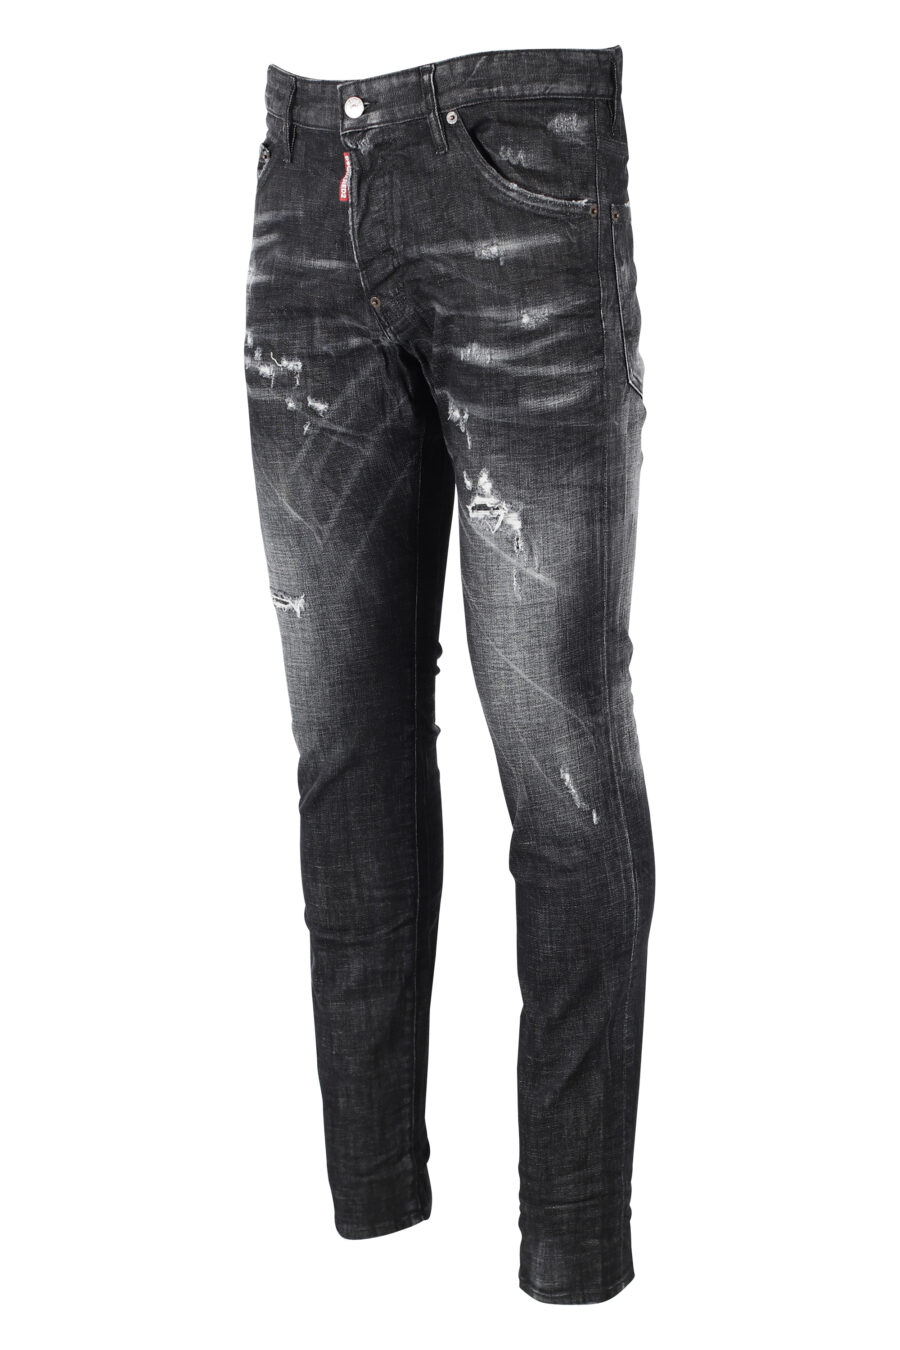 Pantalon noir "Cool Guy" semi-usé et déchiré - IMG 0847